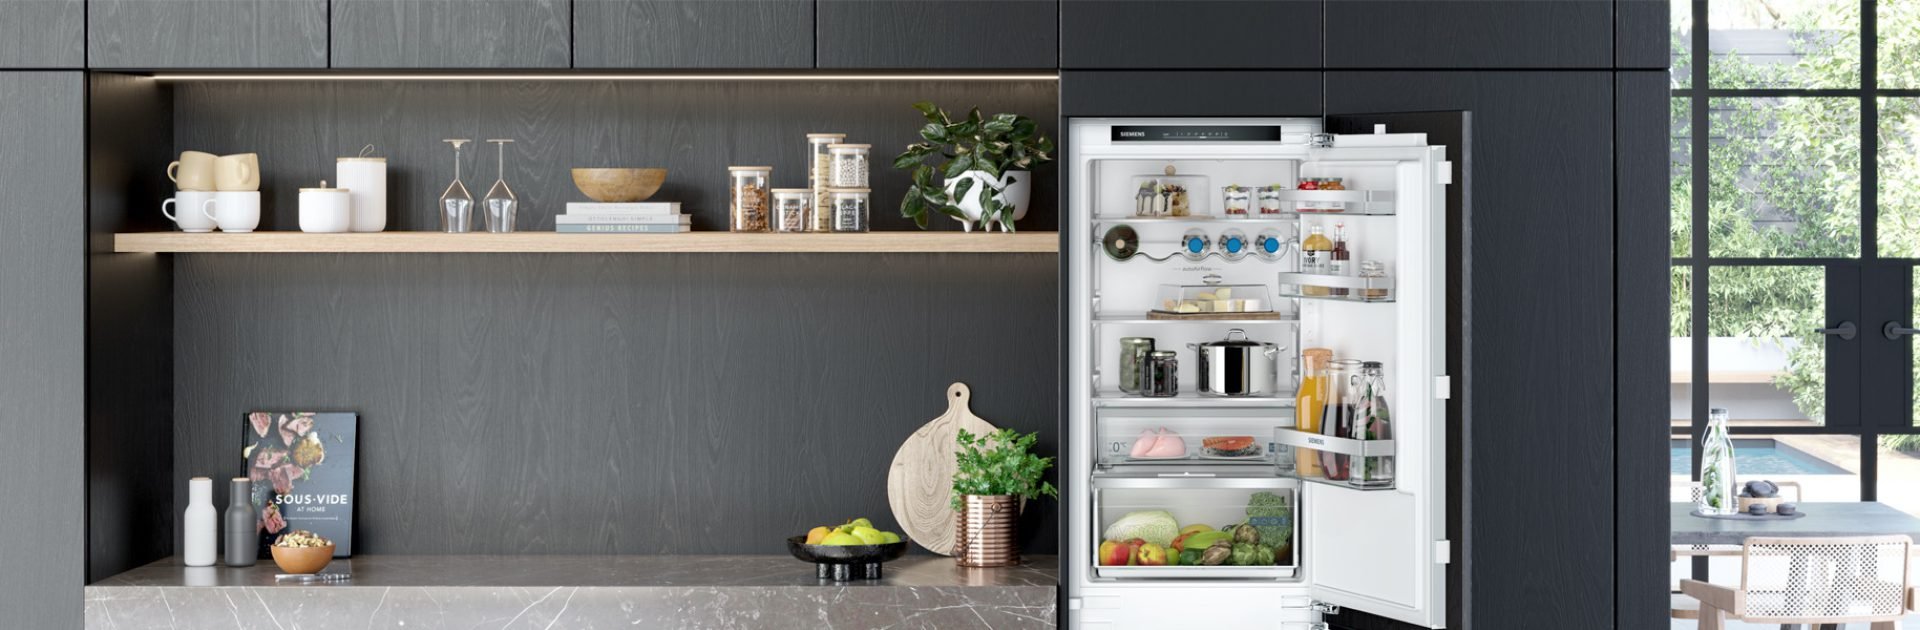 Tips tegen een stinkende koelkast | Eigenhuis Keukens